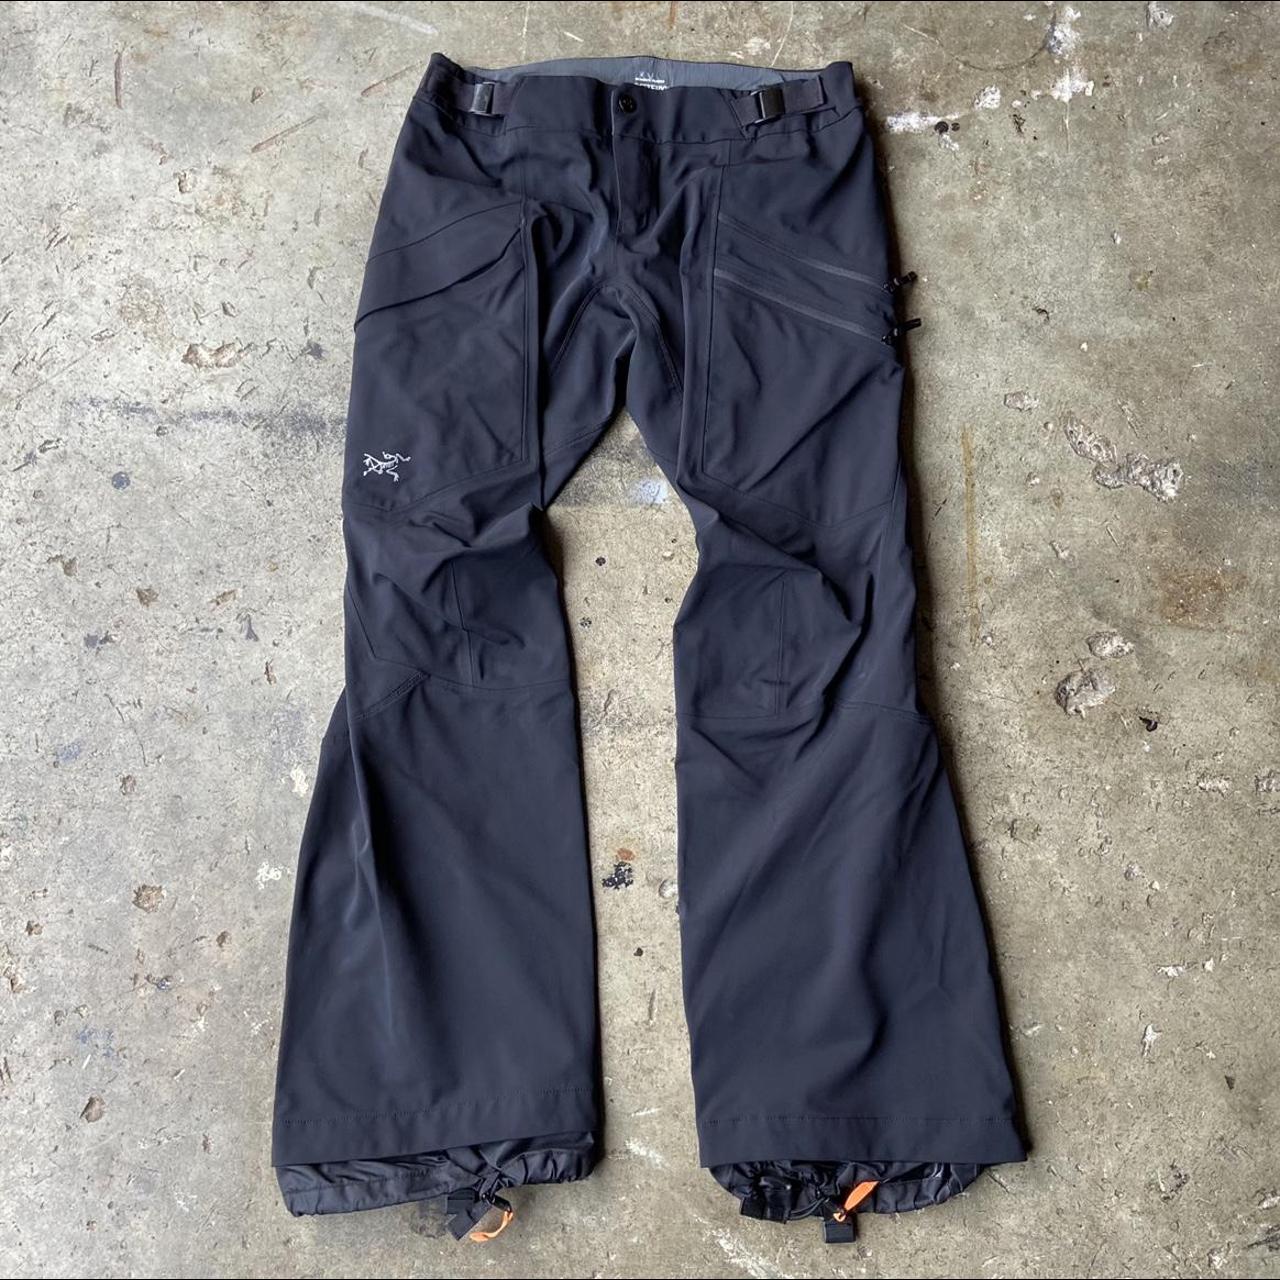 Arcteryx black ski pants! Size woman’s 4 waist 29”... - Depop